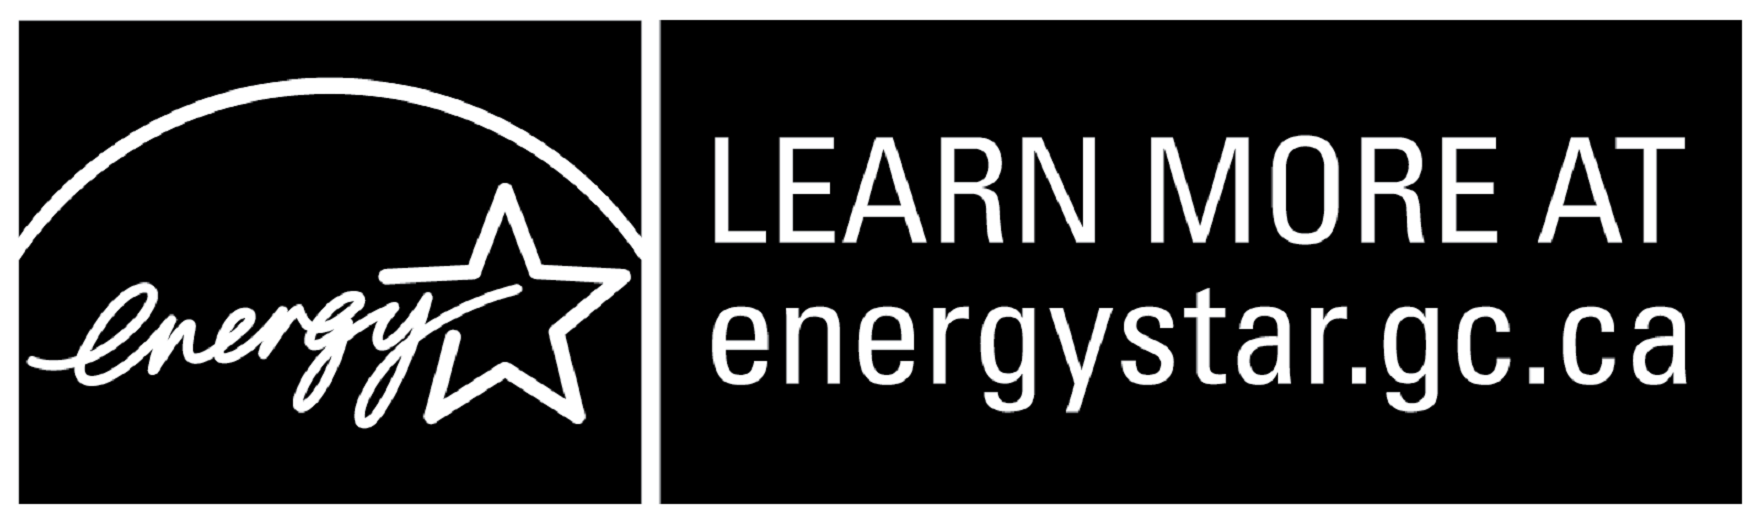 LEARN MORE AT energystar.gc.ca, horizontal black symbol